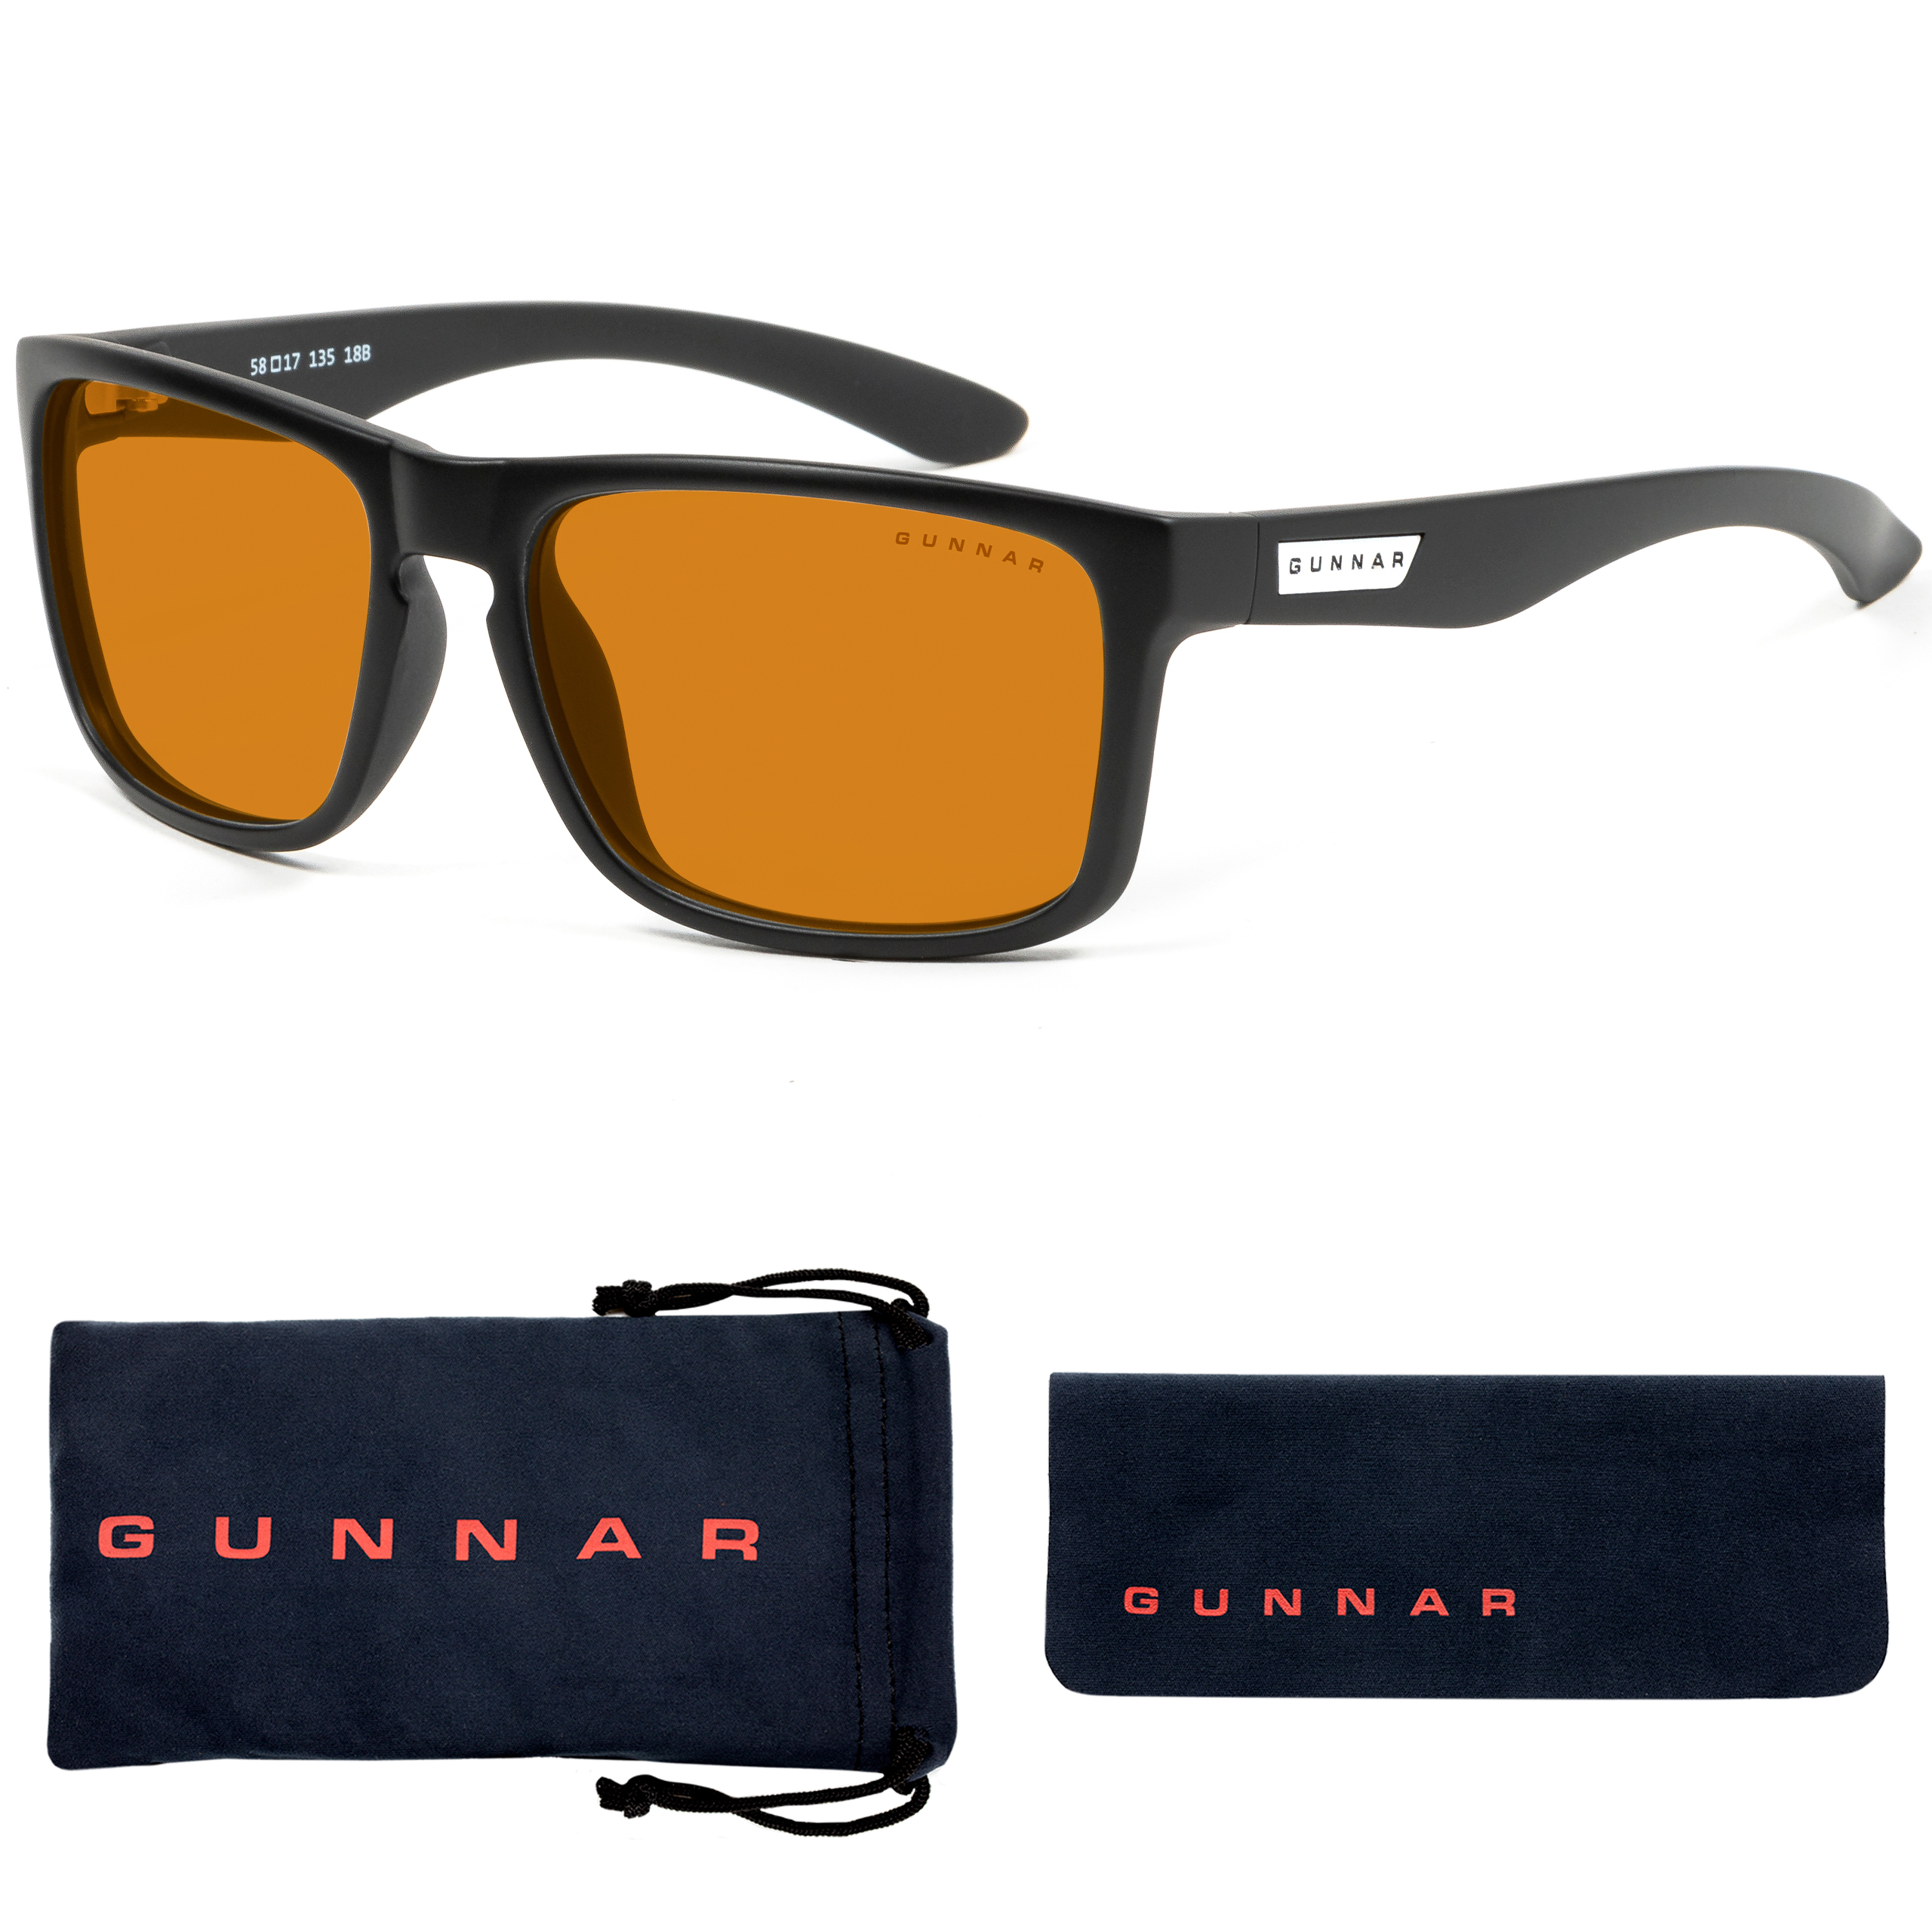 GUNNAR Intercept, Onyx Amber Brille UV-Schutz, Tönung, Rahmen, MAX Premium, Gaming Blaulichtfilter